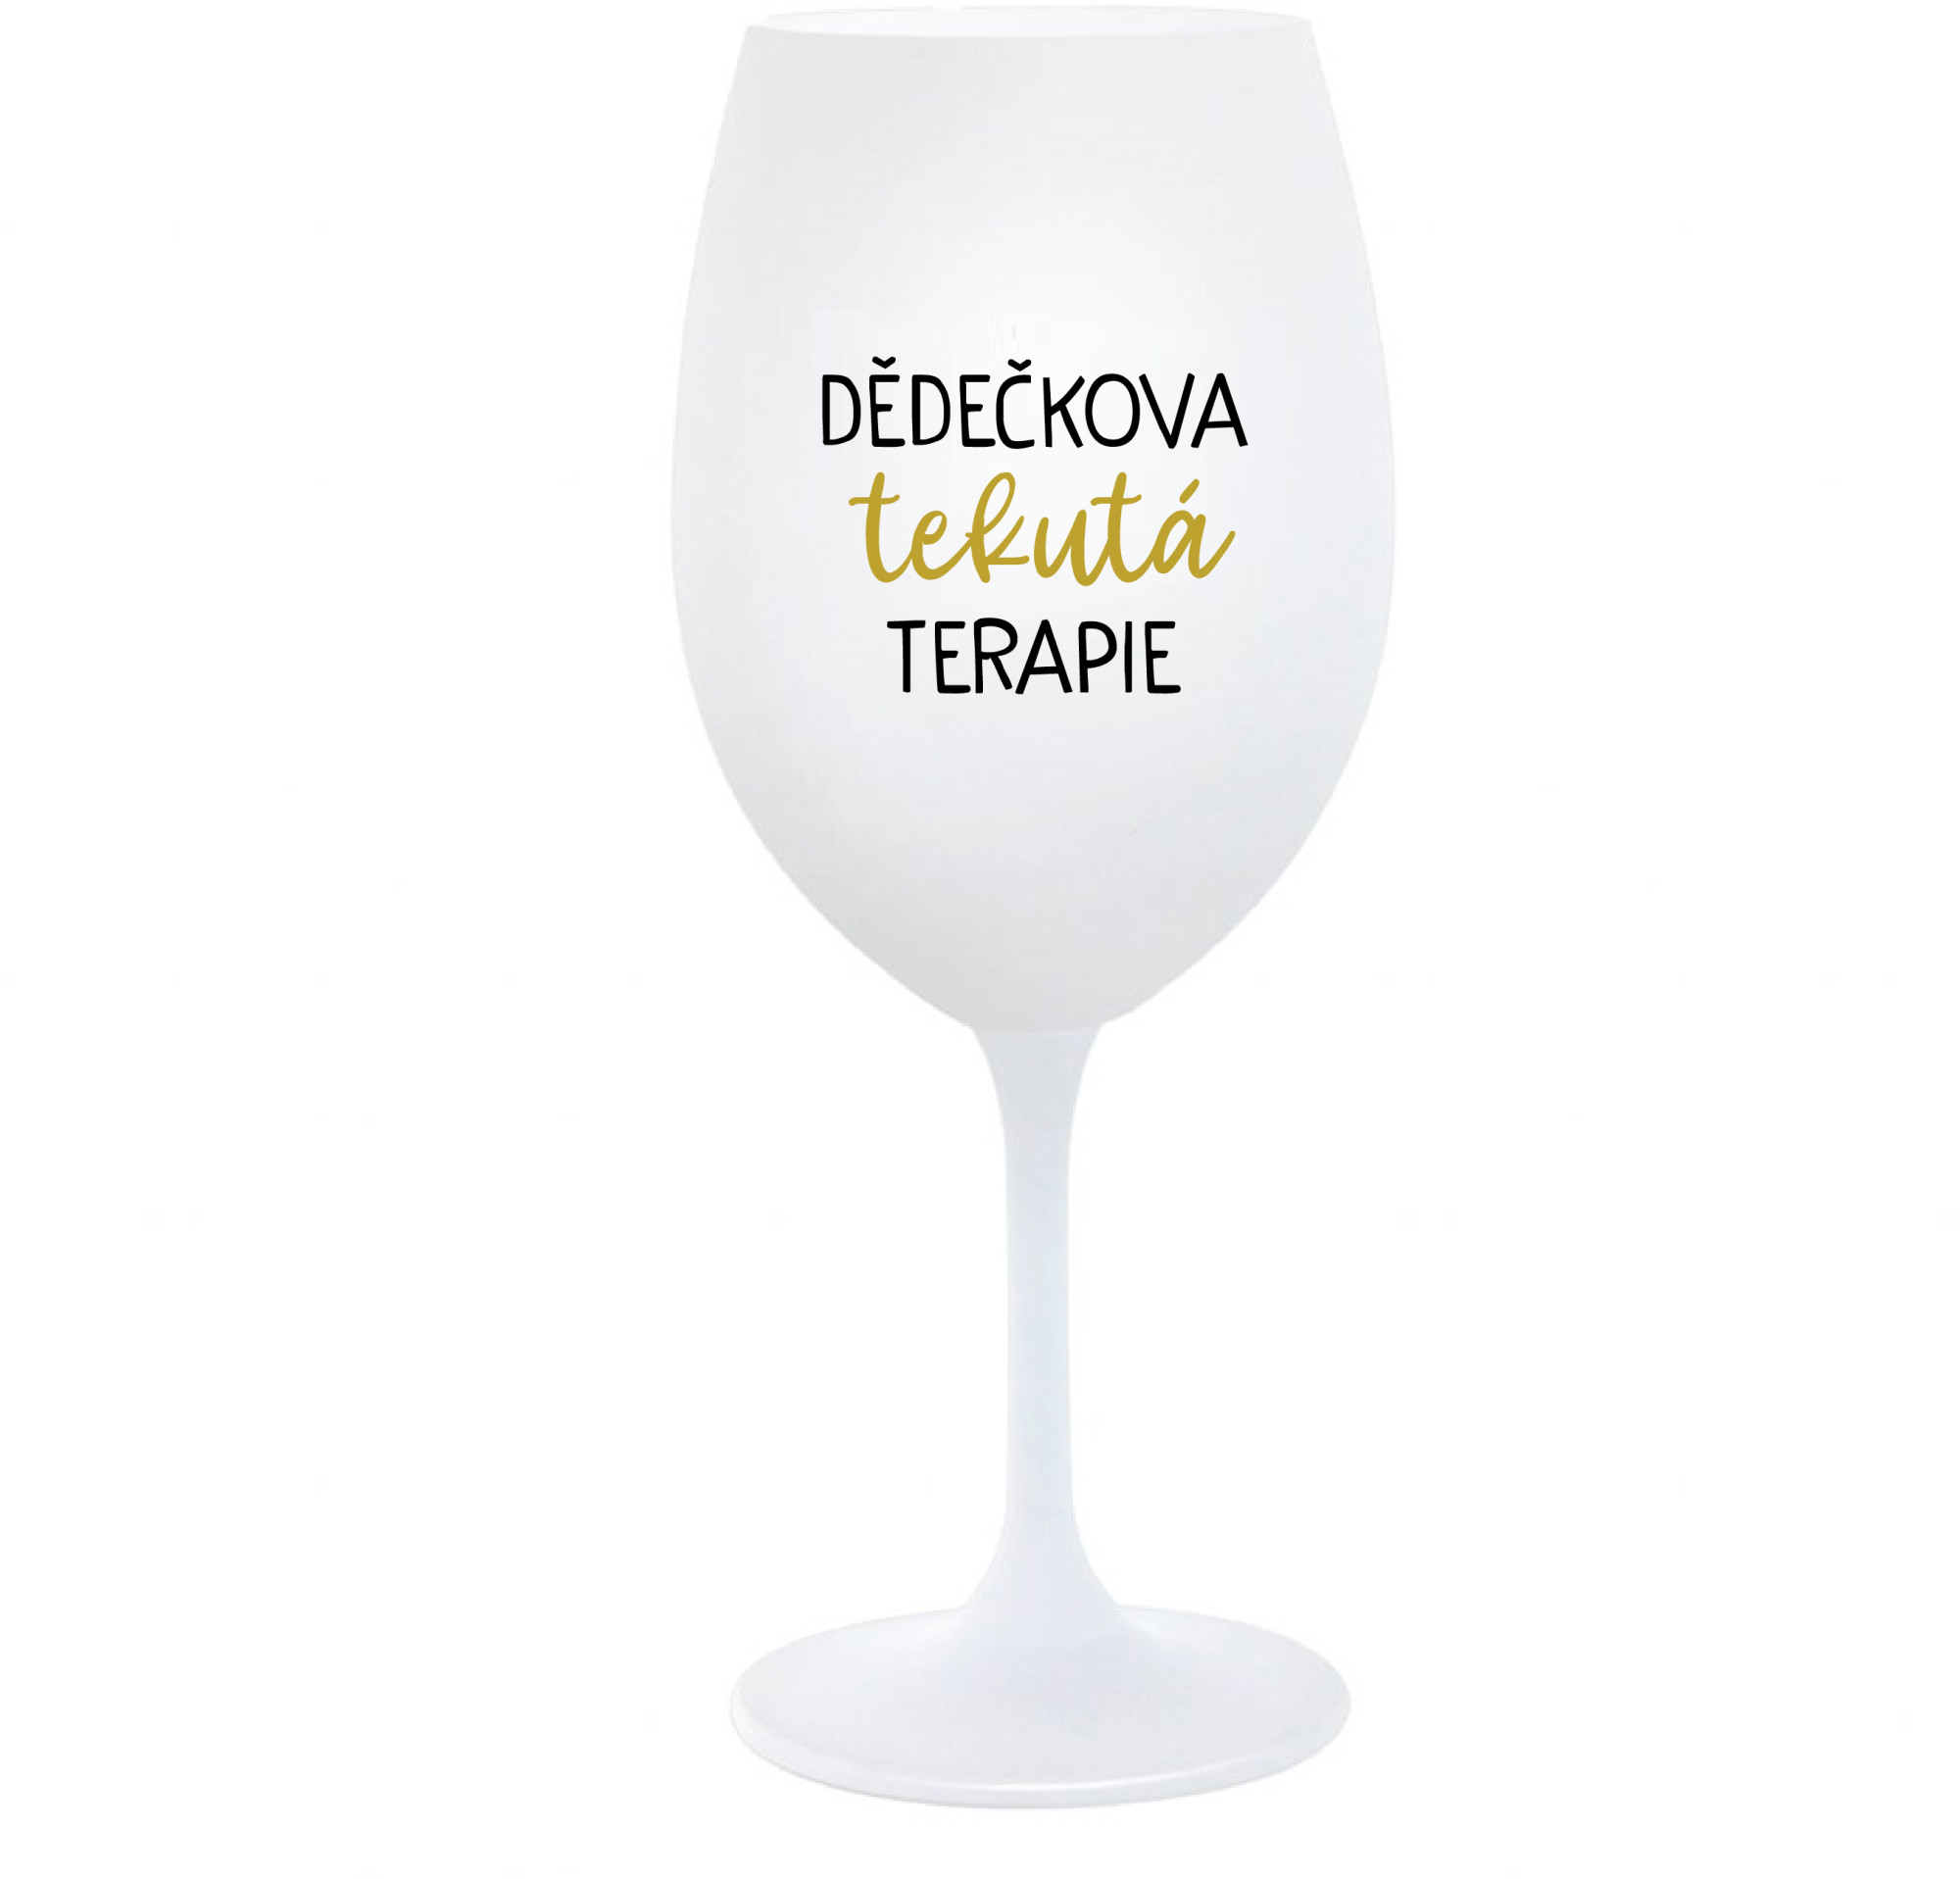 DĚDEČKOVA TEKUTÁ TERAPIE - bílá sklenice na víno 350 ml